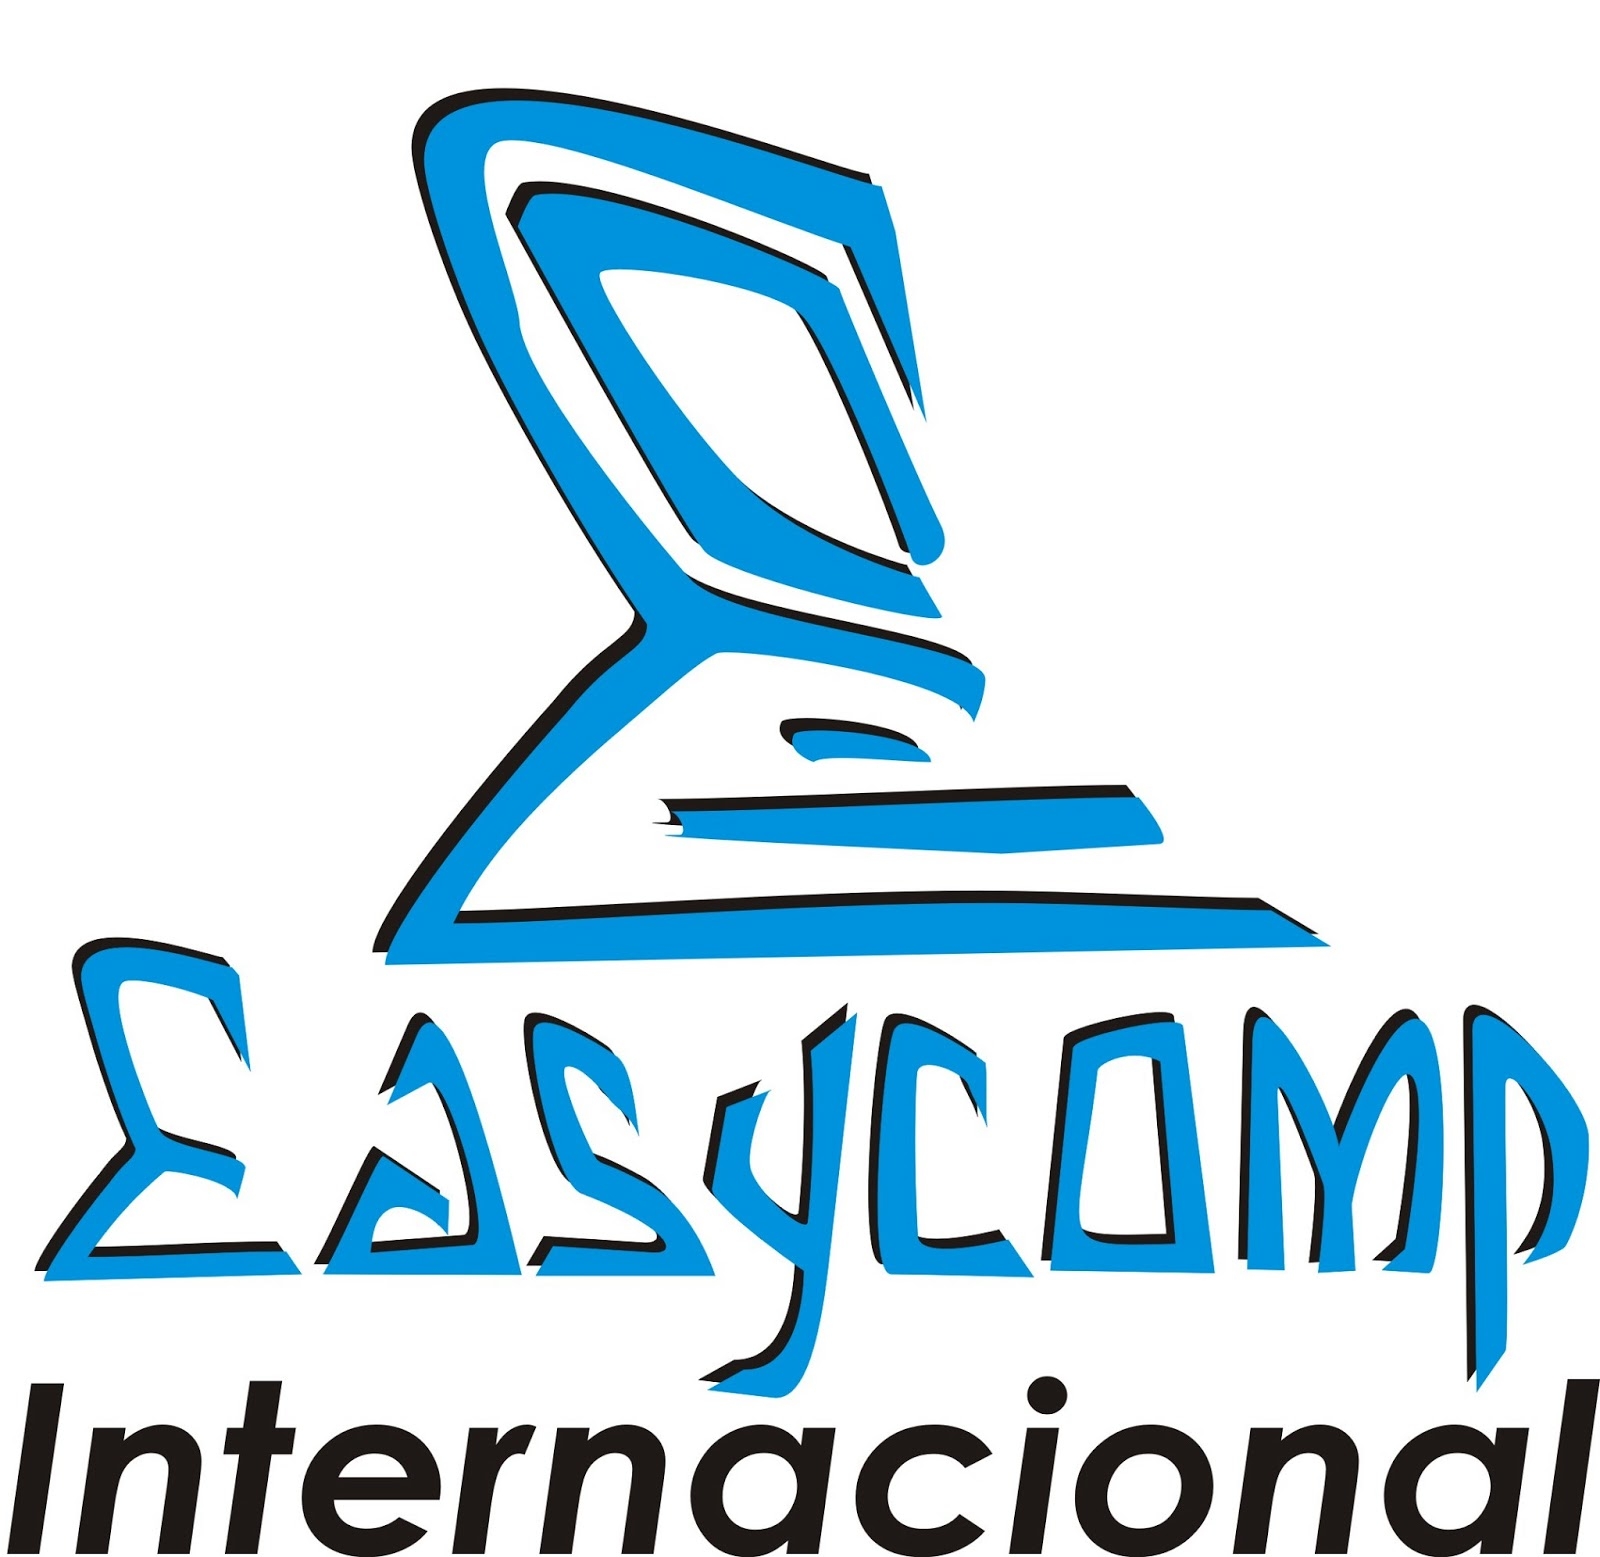 Easycomp